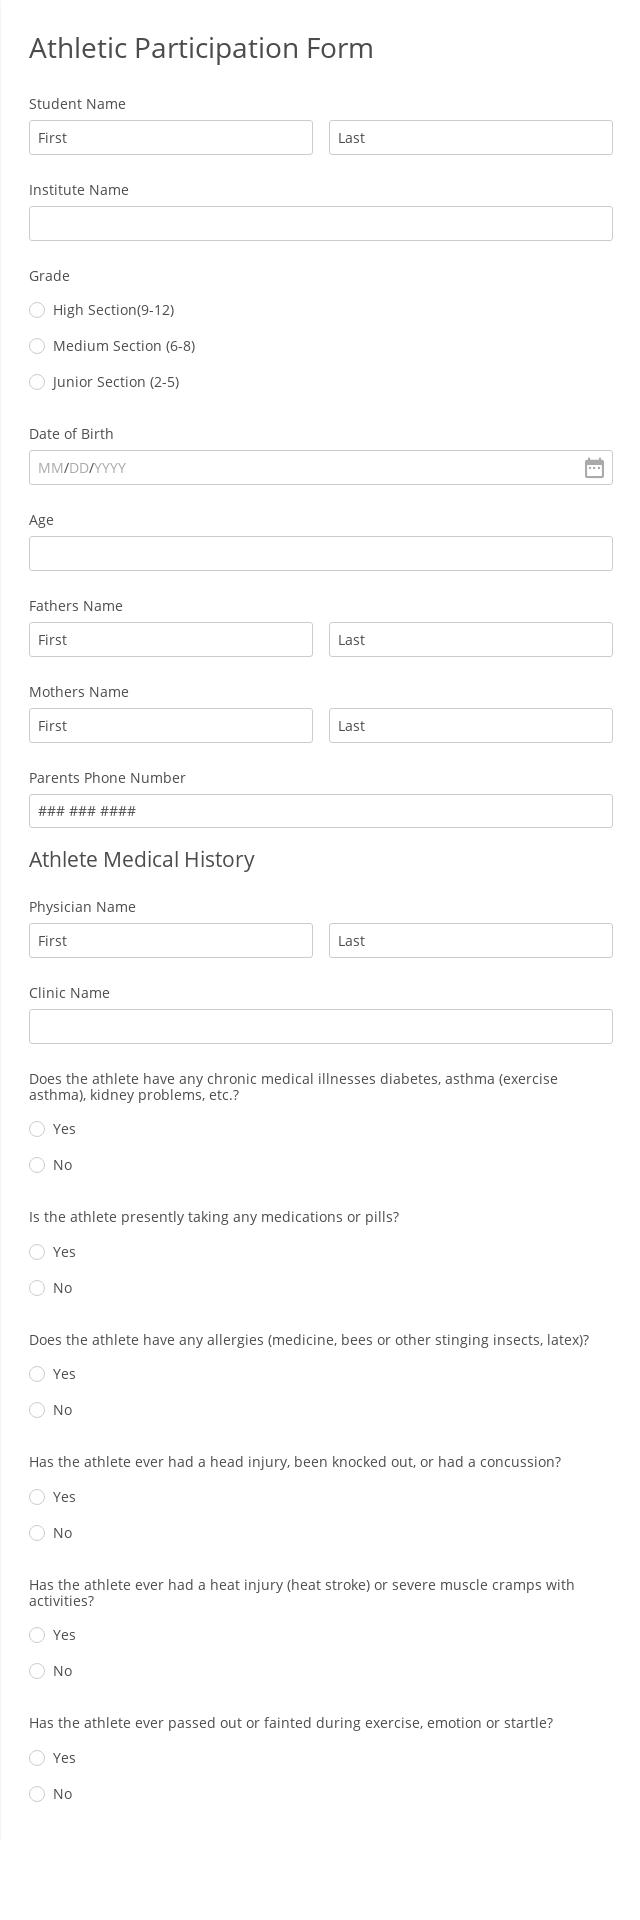 Athletic Participation Form